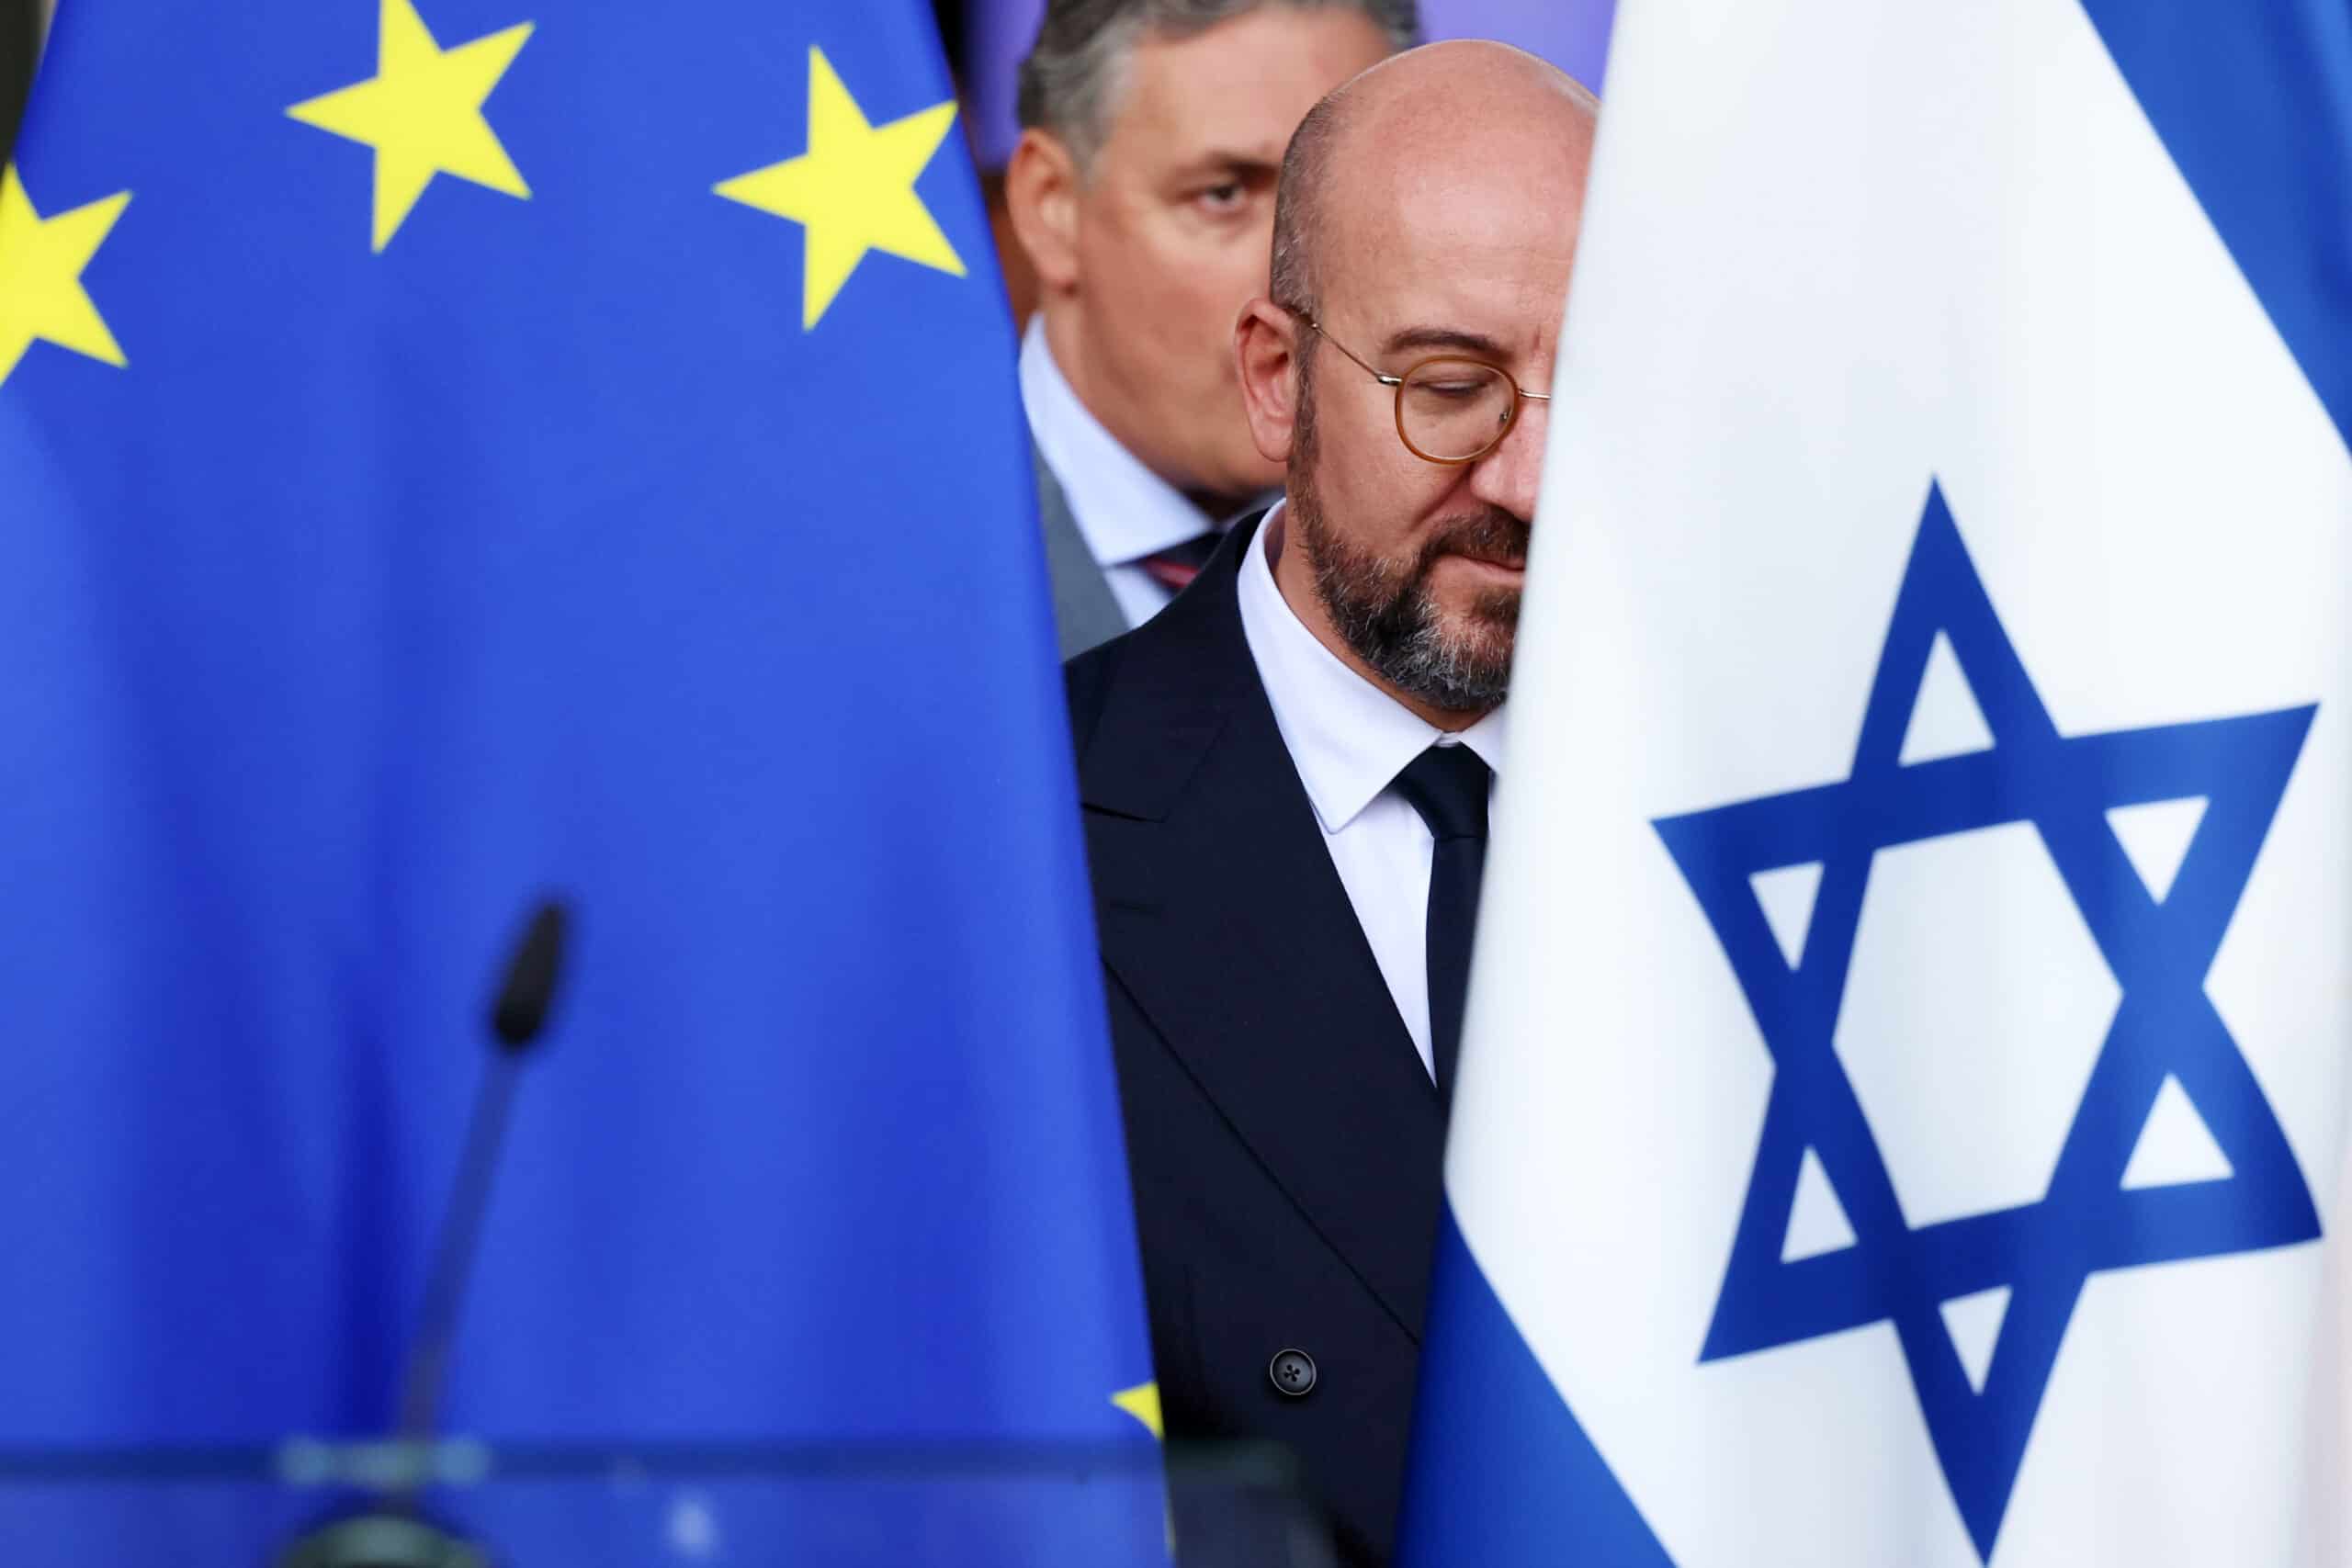 Přečtete si více ze článku Izrael má právo se bránit, ale v souladu s právem, uvedli lídři zemí EU